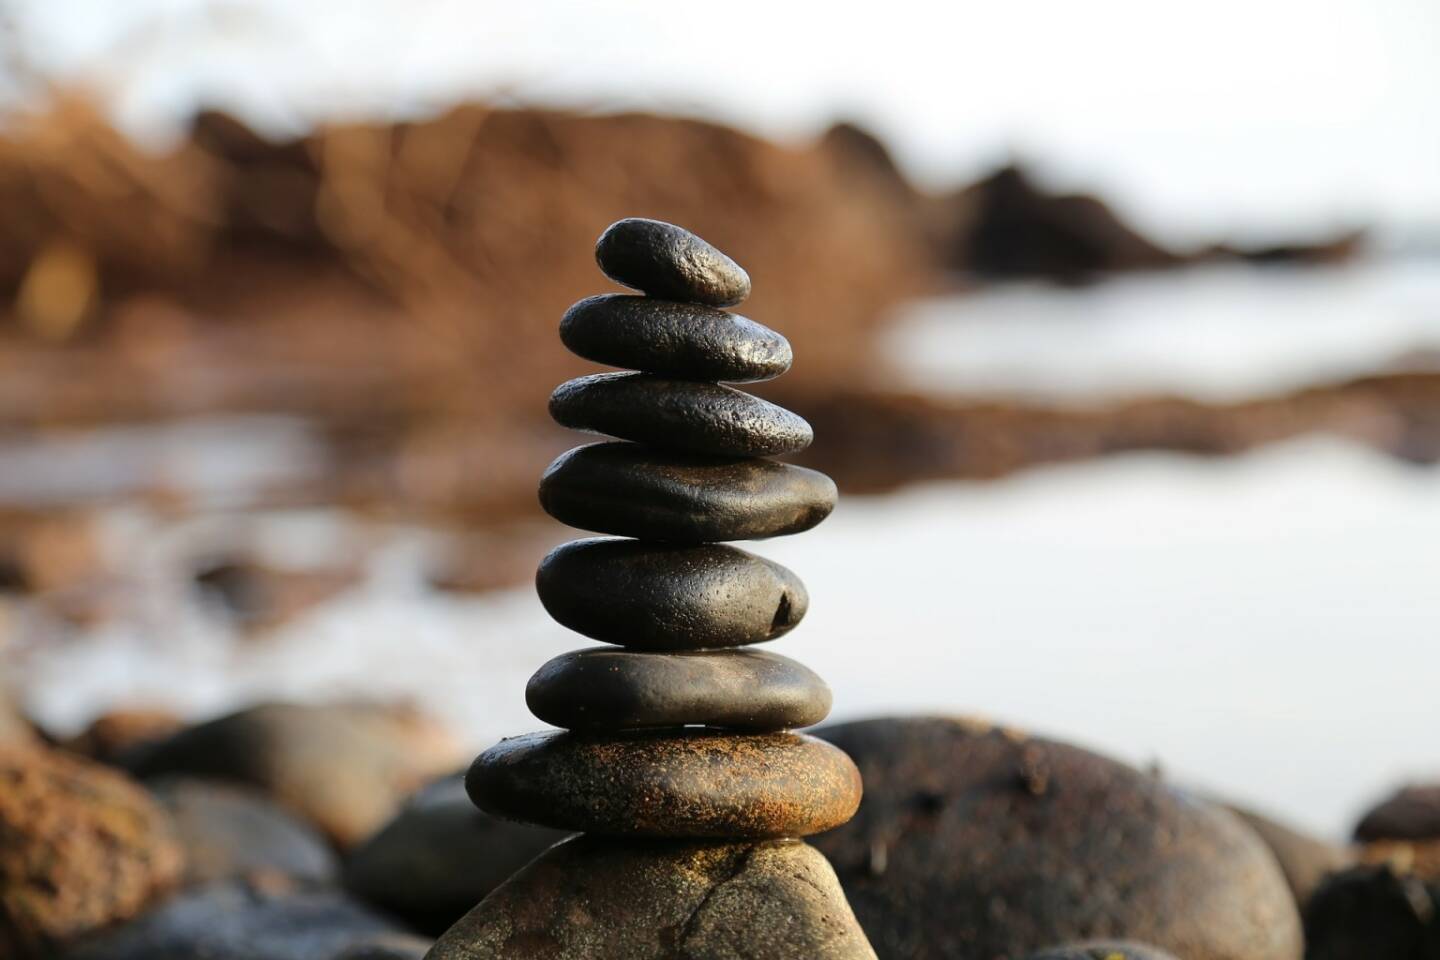 Stabil, instabil, Gleichgewicht, Turm, wackelig, wackeln, Aufbauen, Stein, Steine (Bild: Pixabay/milivanily https://pixabay.com/de/steine-stein-turm-gleichgewicht-2082937/ )